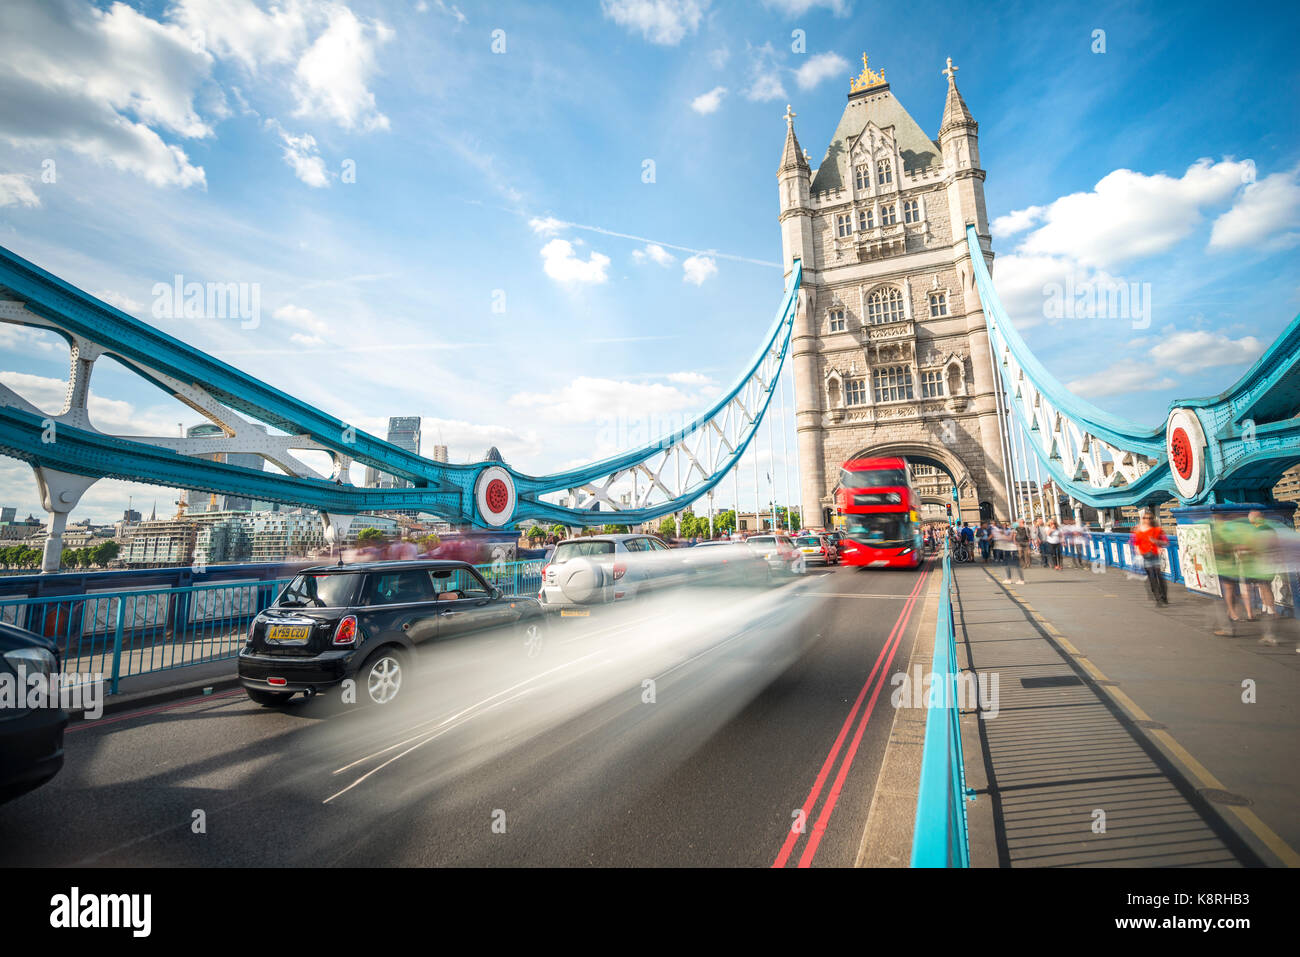 Bus à impériale rouge sur le Tower Bridge, le motion blur, Tower Bridge, Londres, Angleterre, Grande-Bretagne Banque D'Images